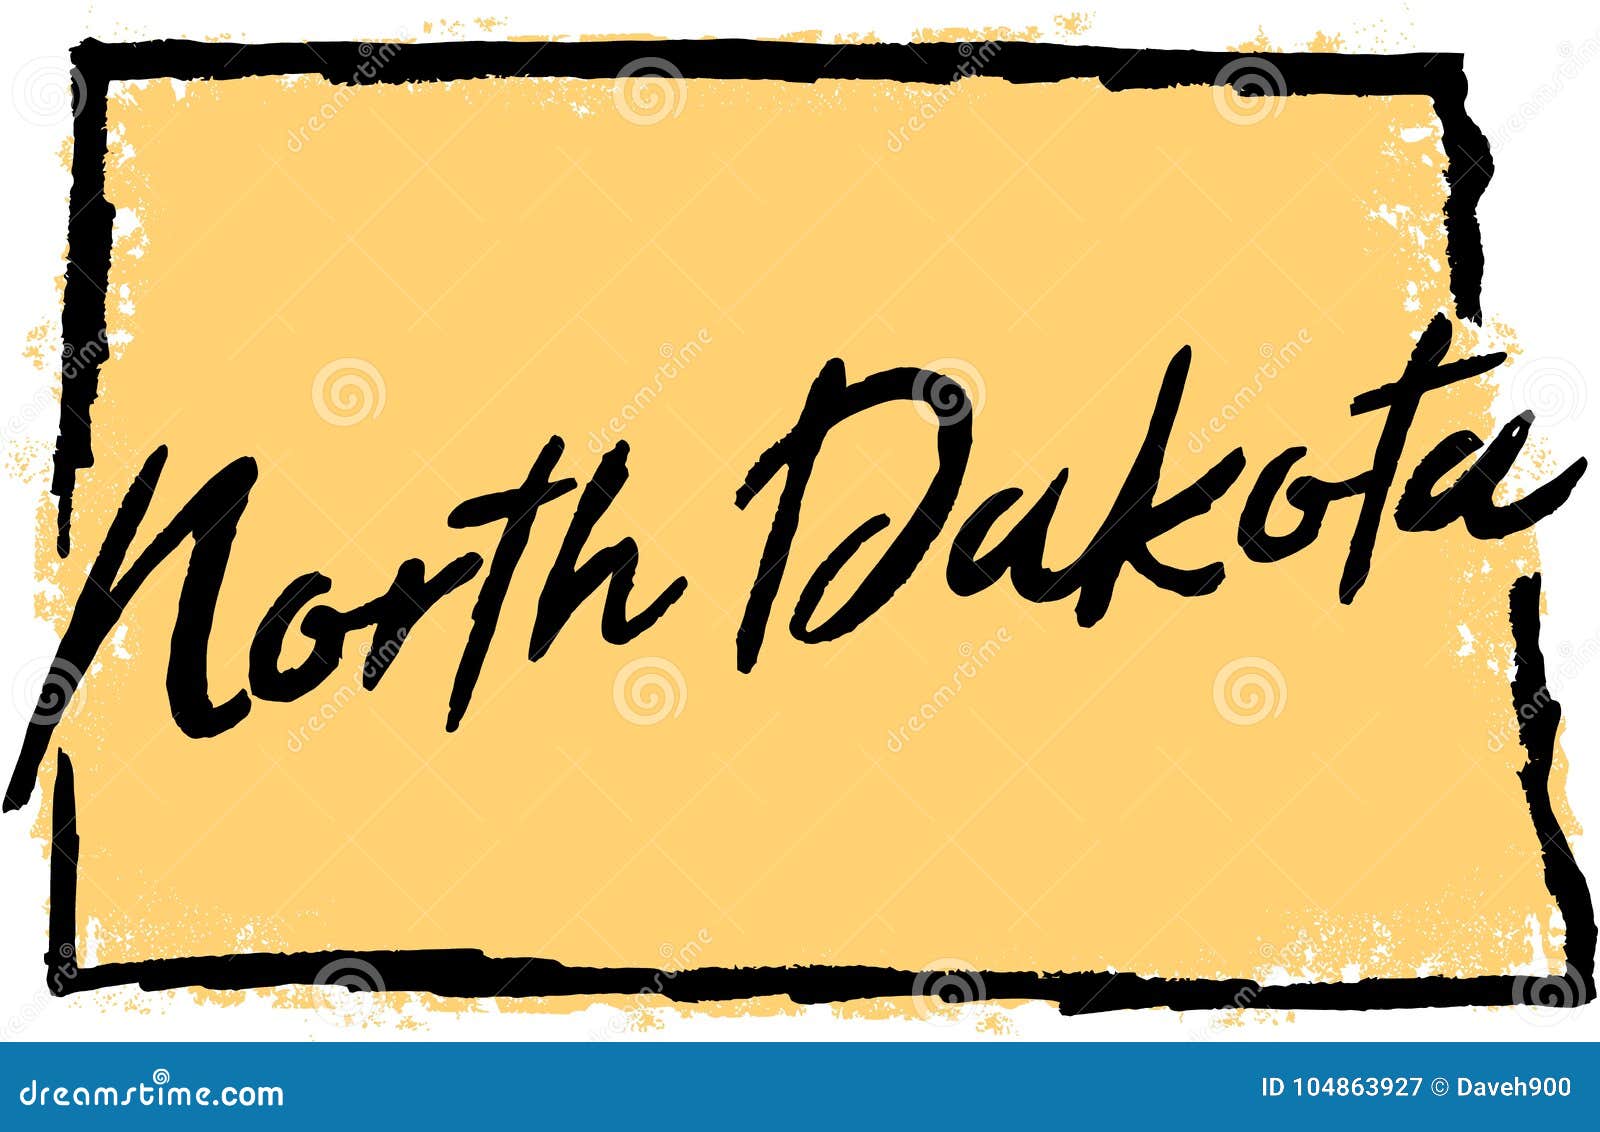 hand drawn north dakota state 